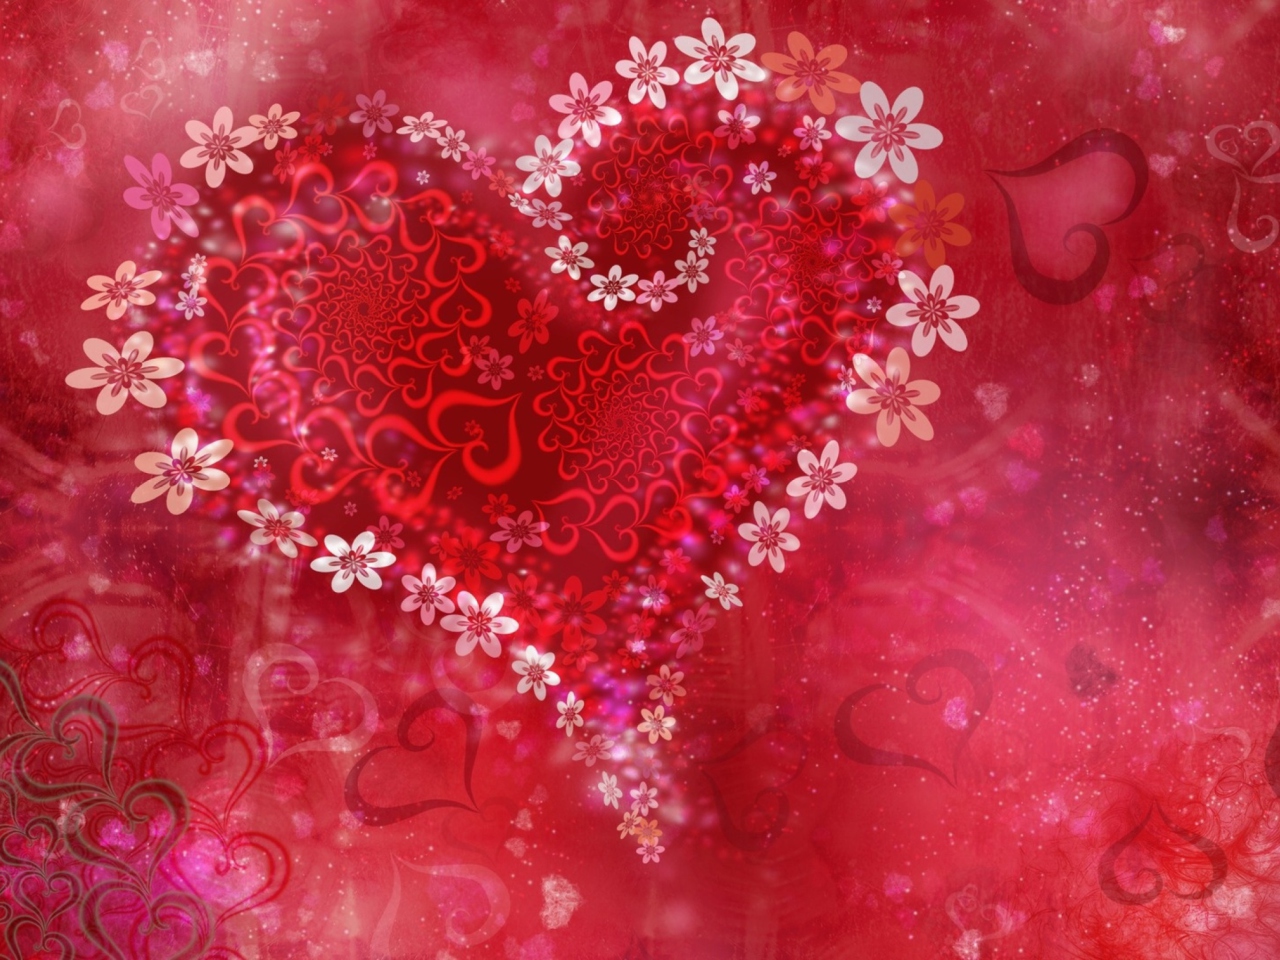 Love Heart Flowers wallpaper 1280x960